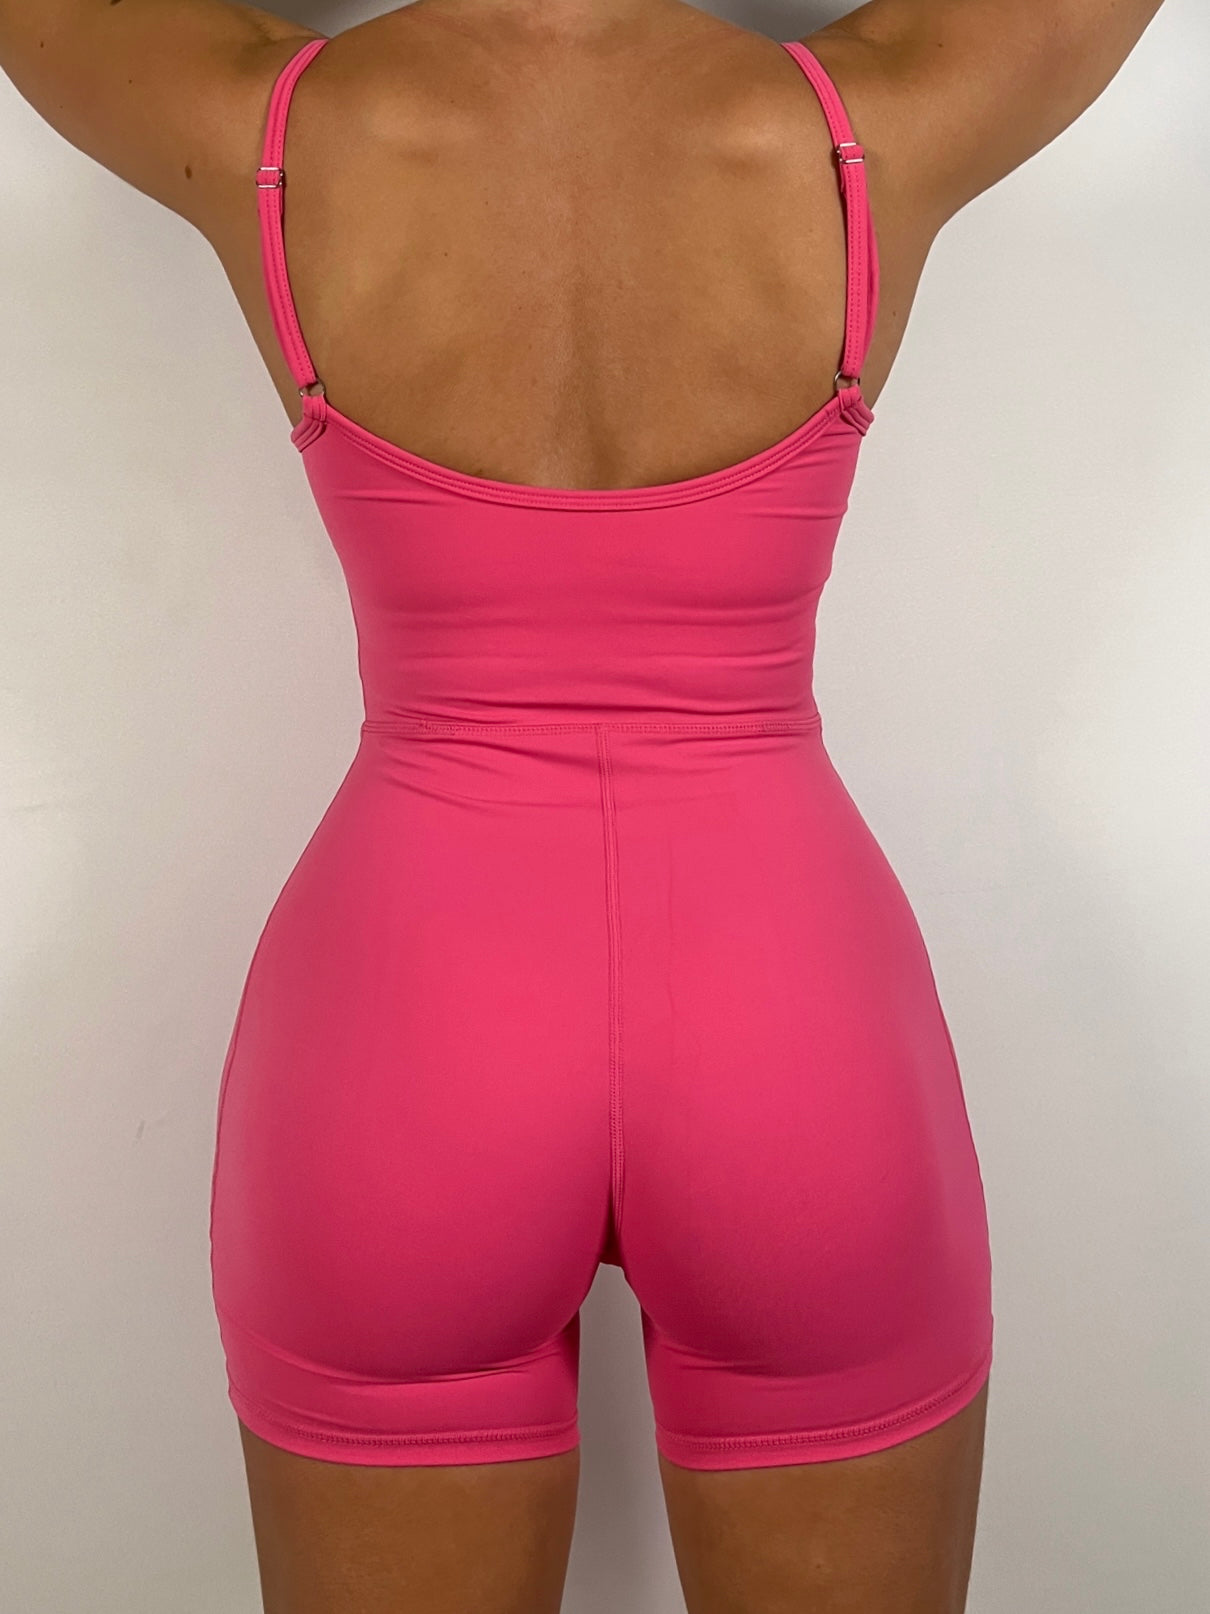 Hot pink Sculpt Jumpsuit